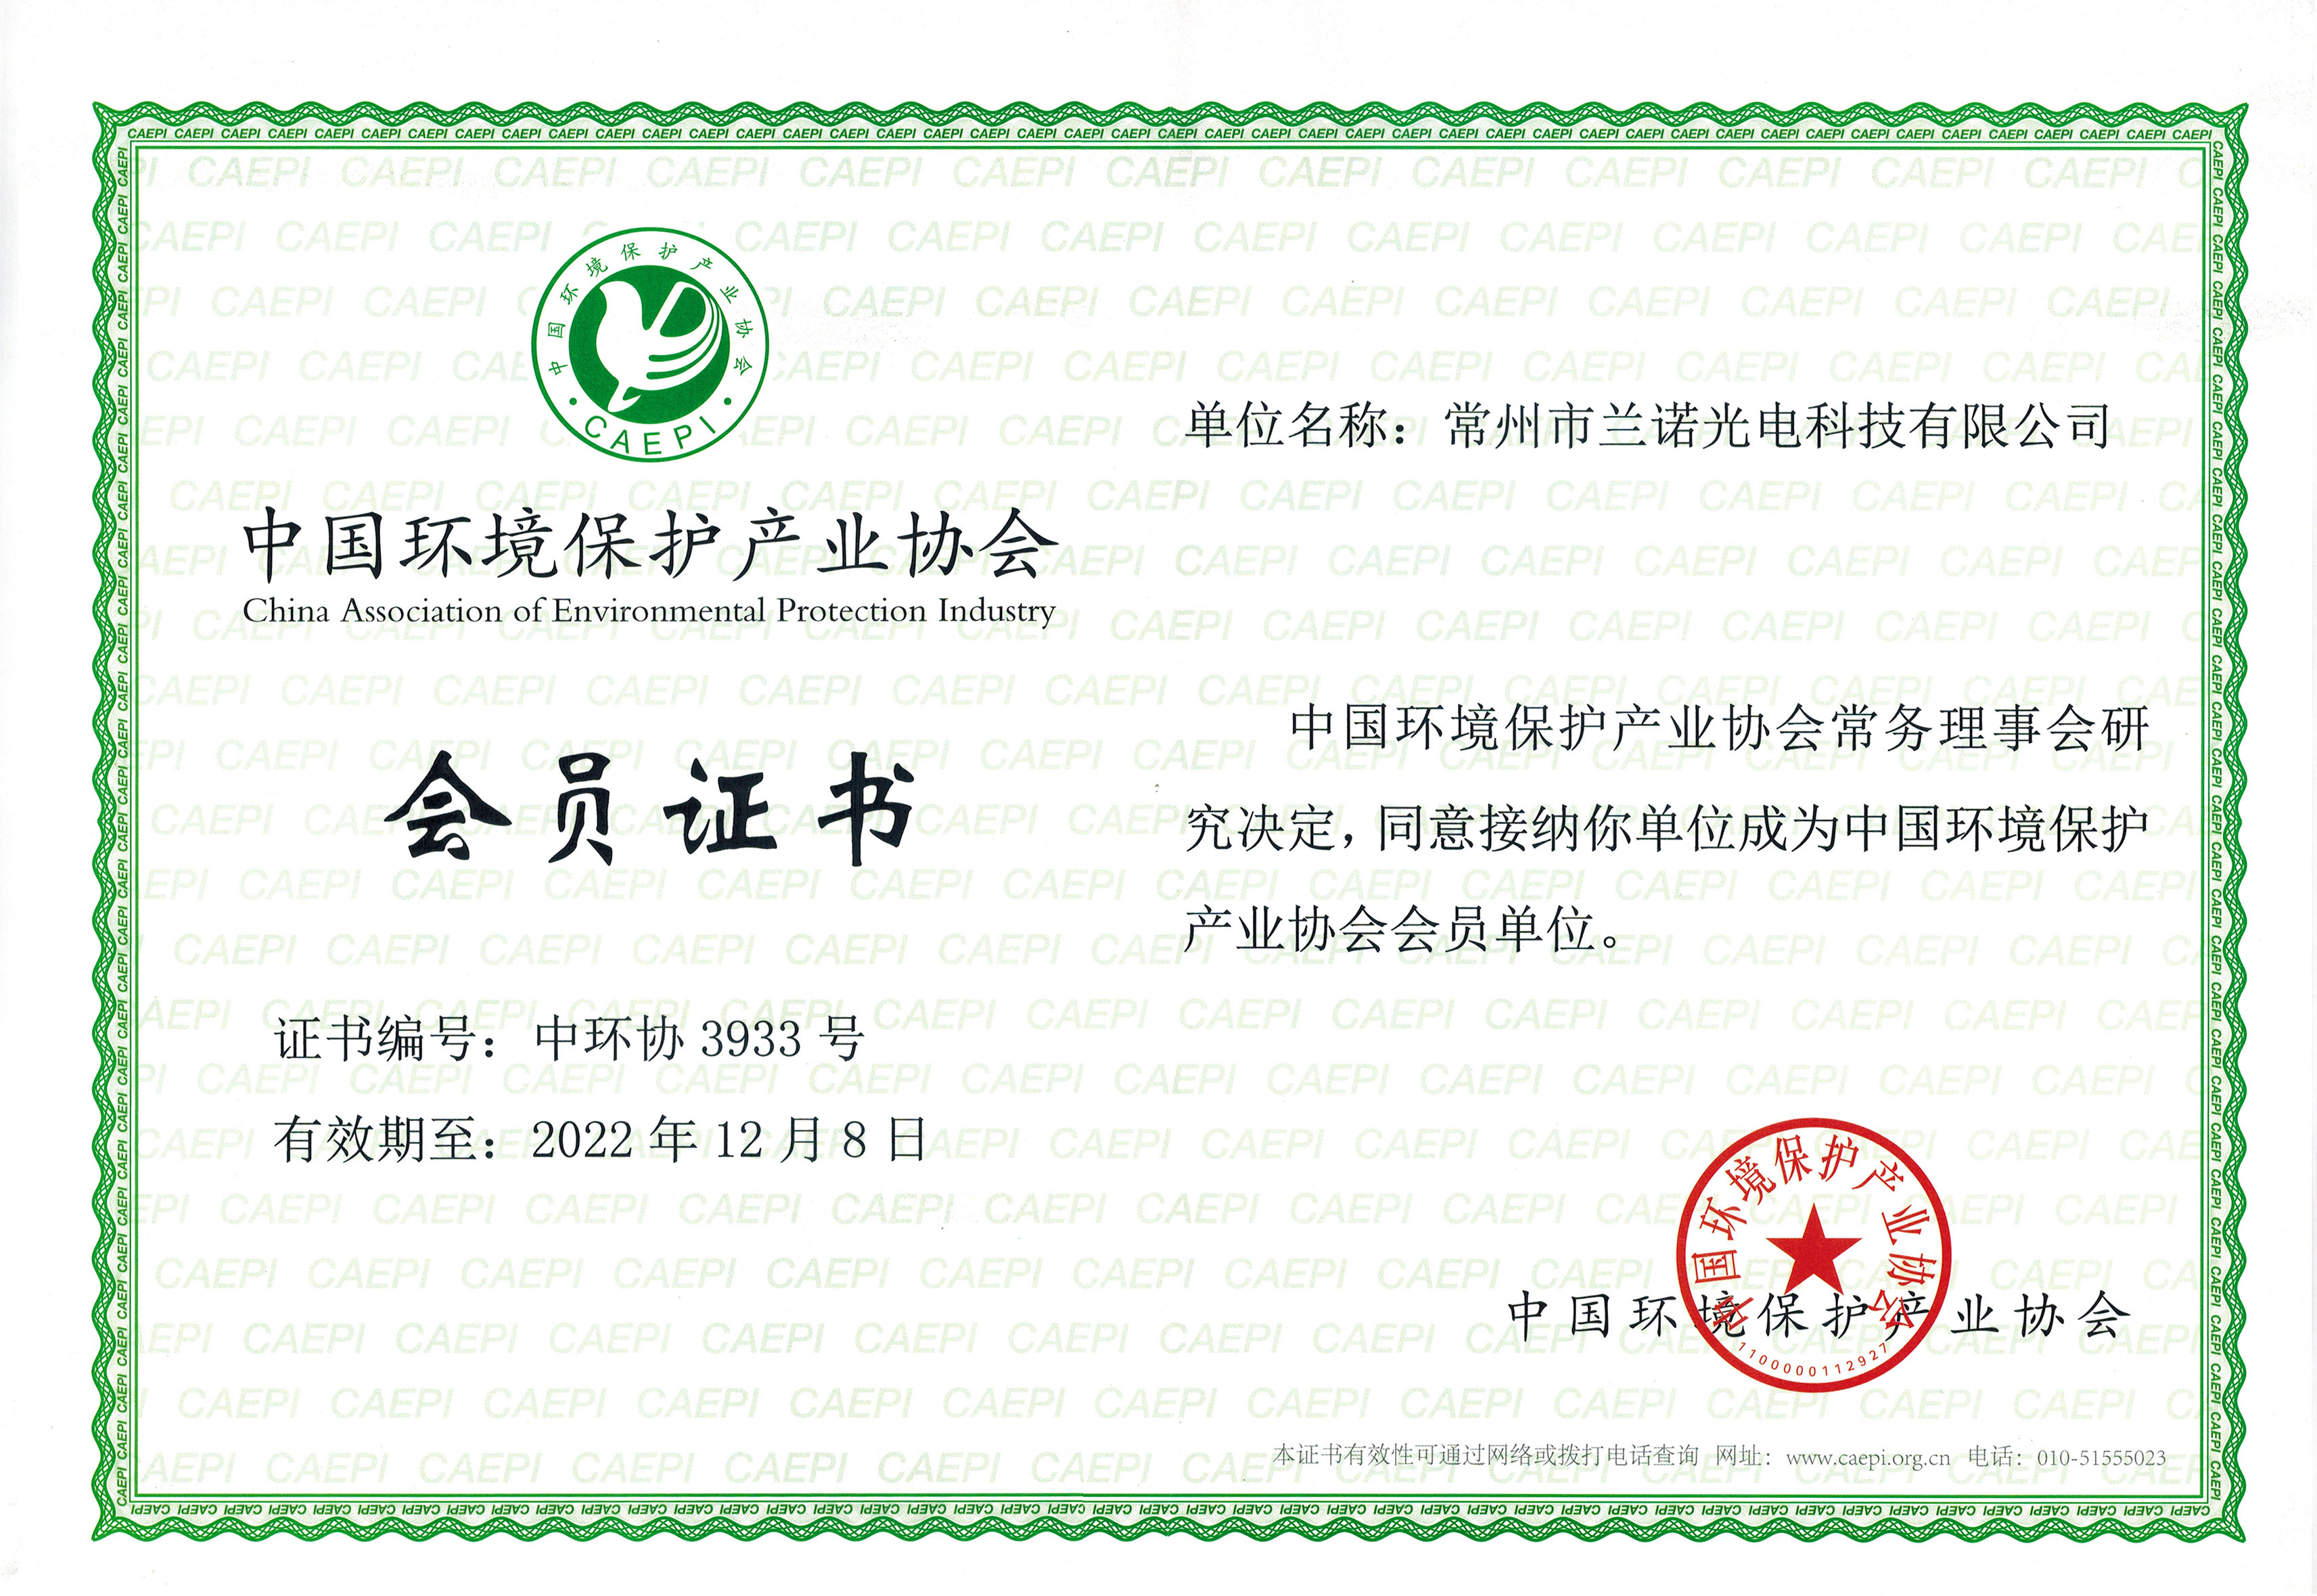 兰诺光电加入中国环境保护产业协会